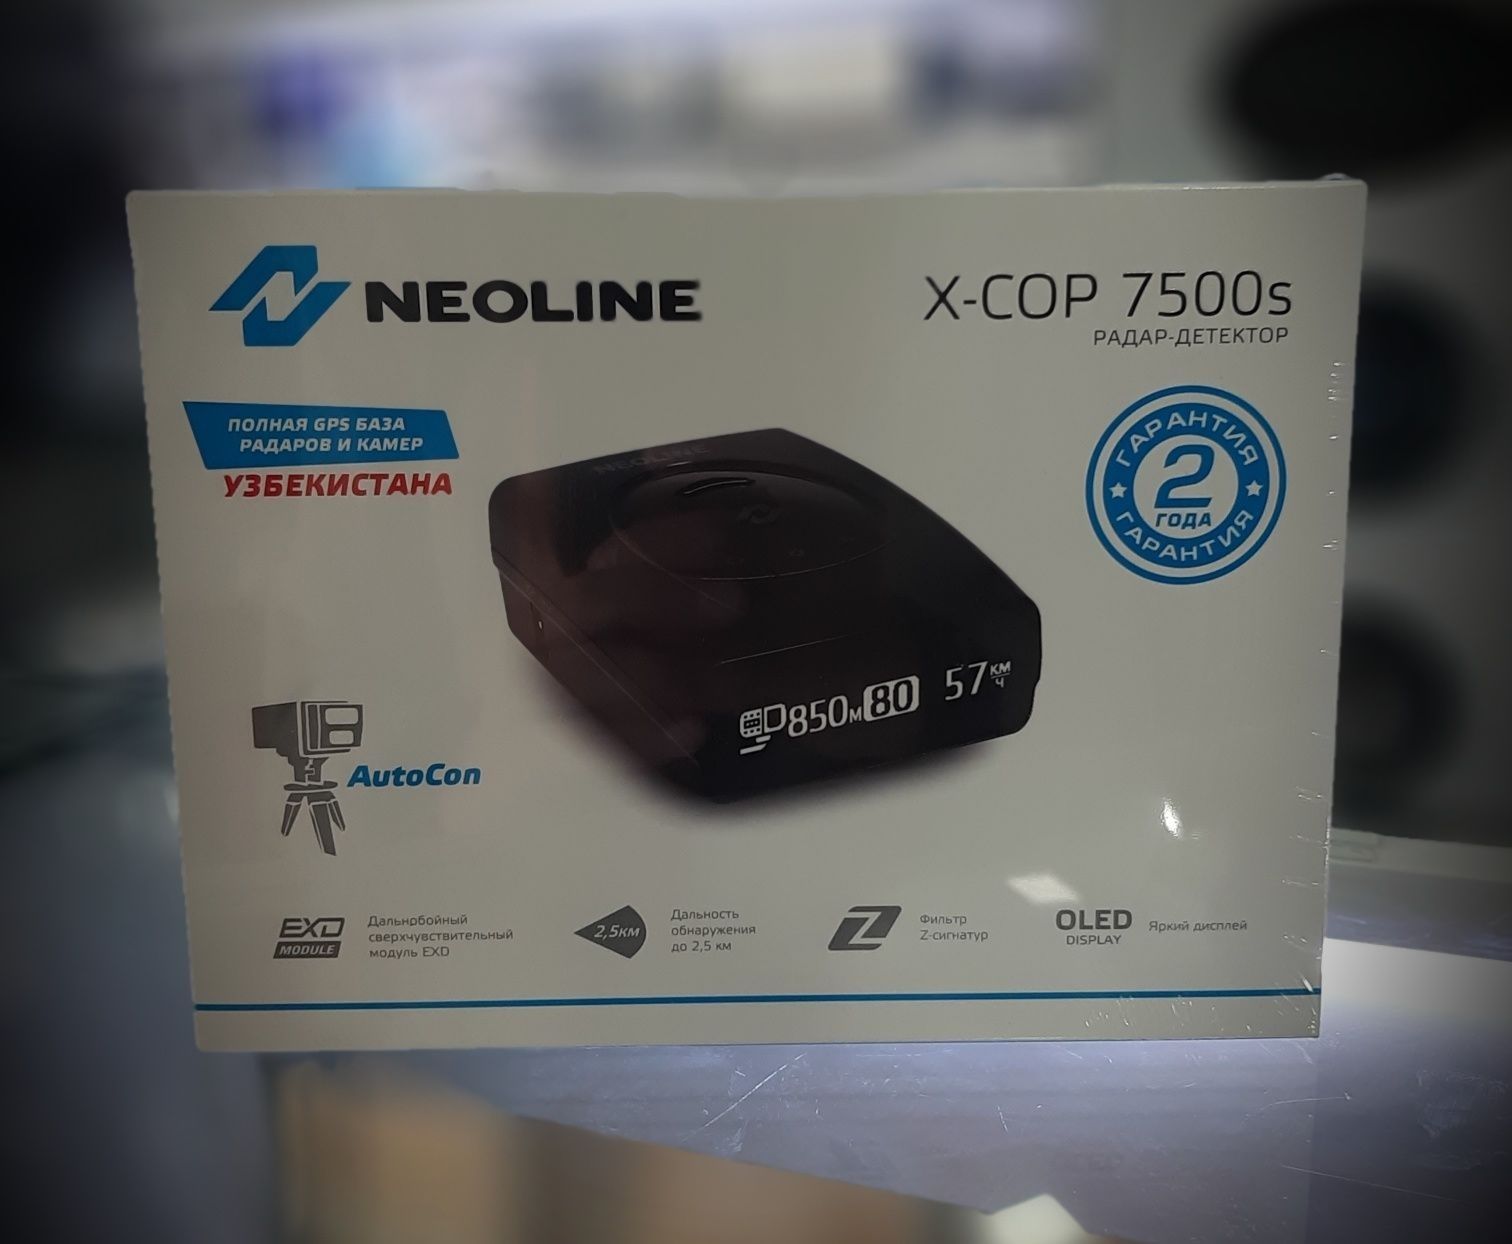 Neoline x-cop7500s. Антирадар No1. 2год гарантия и бесплатная прошивка